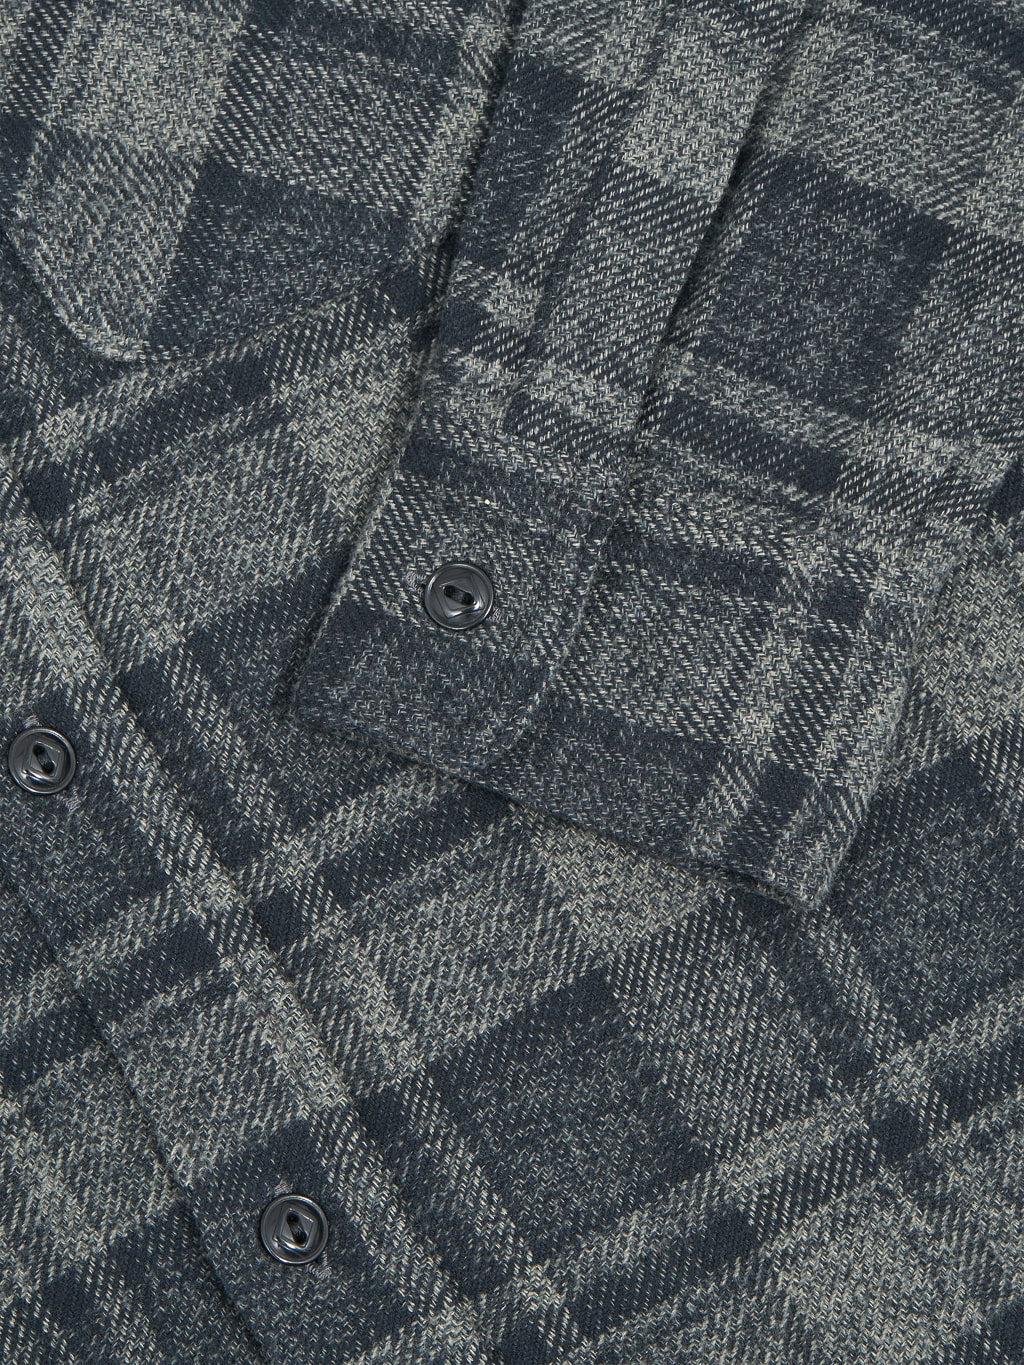 Fob Factory F3497 Nel Check Work flannel Shirt grey cuff